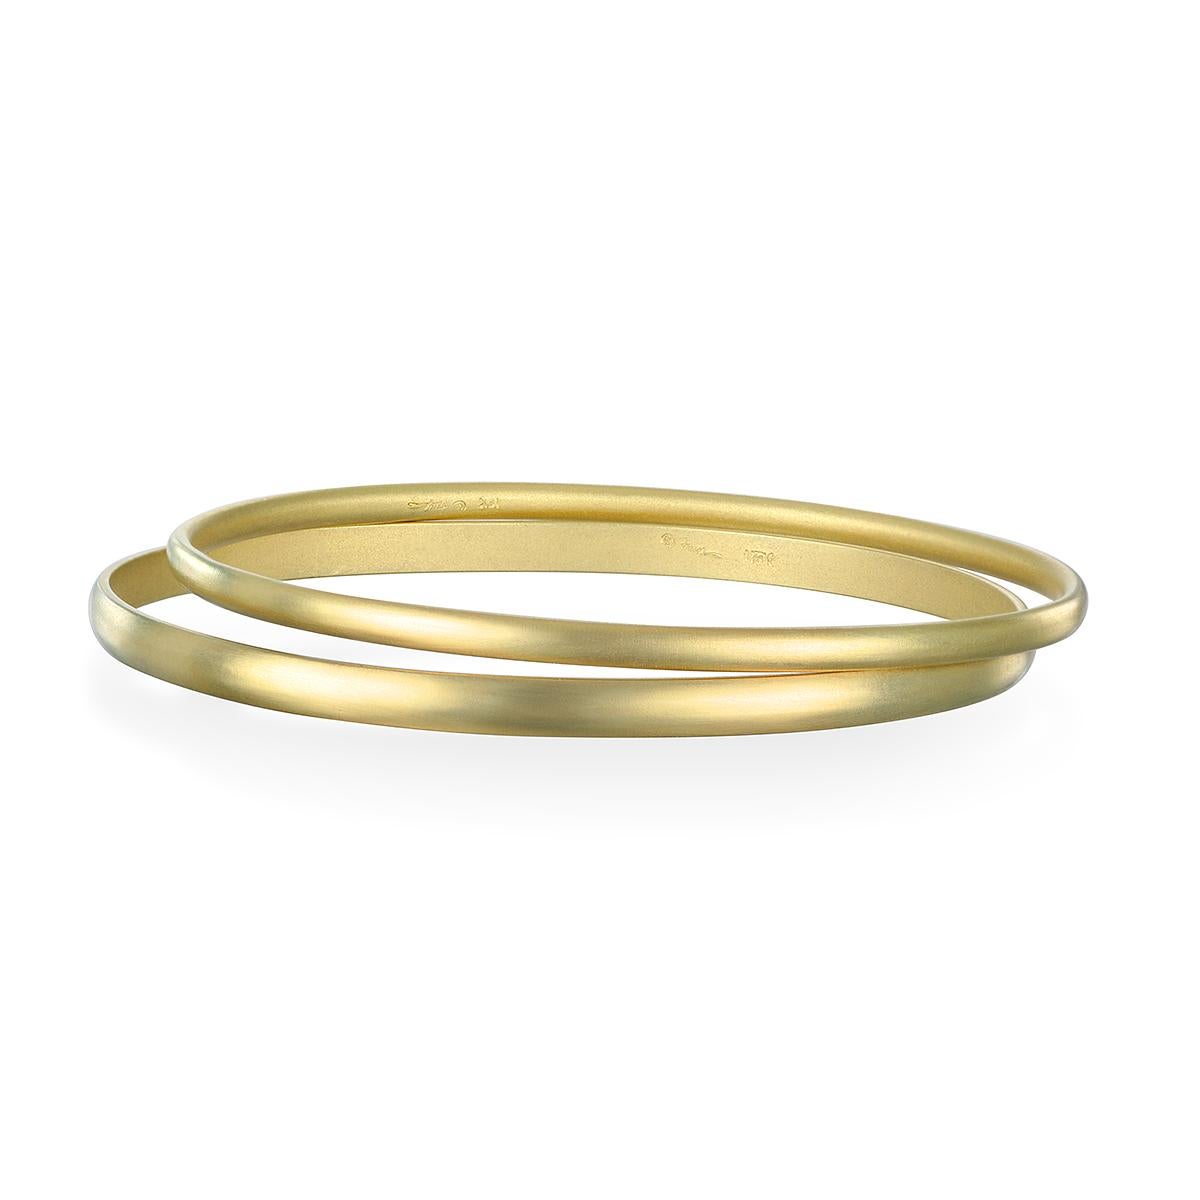 Le bracelet en fil d'or 18 carats ovale de Faye Kim sera un élément essentiel de votre garde-robe. Ce bracelet fait main est d'une finition mate et est parfait pour être empilé avec d'autres bracelets !

Diamètre intérieur 2.5